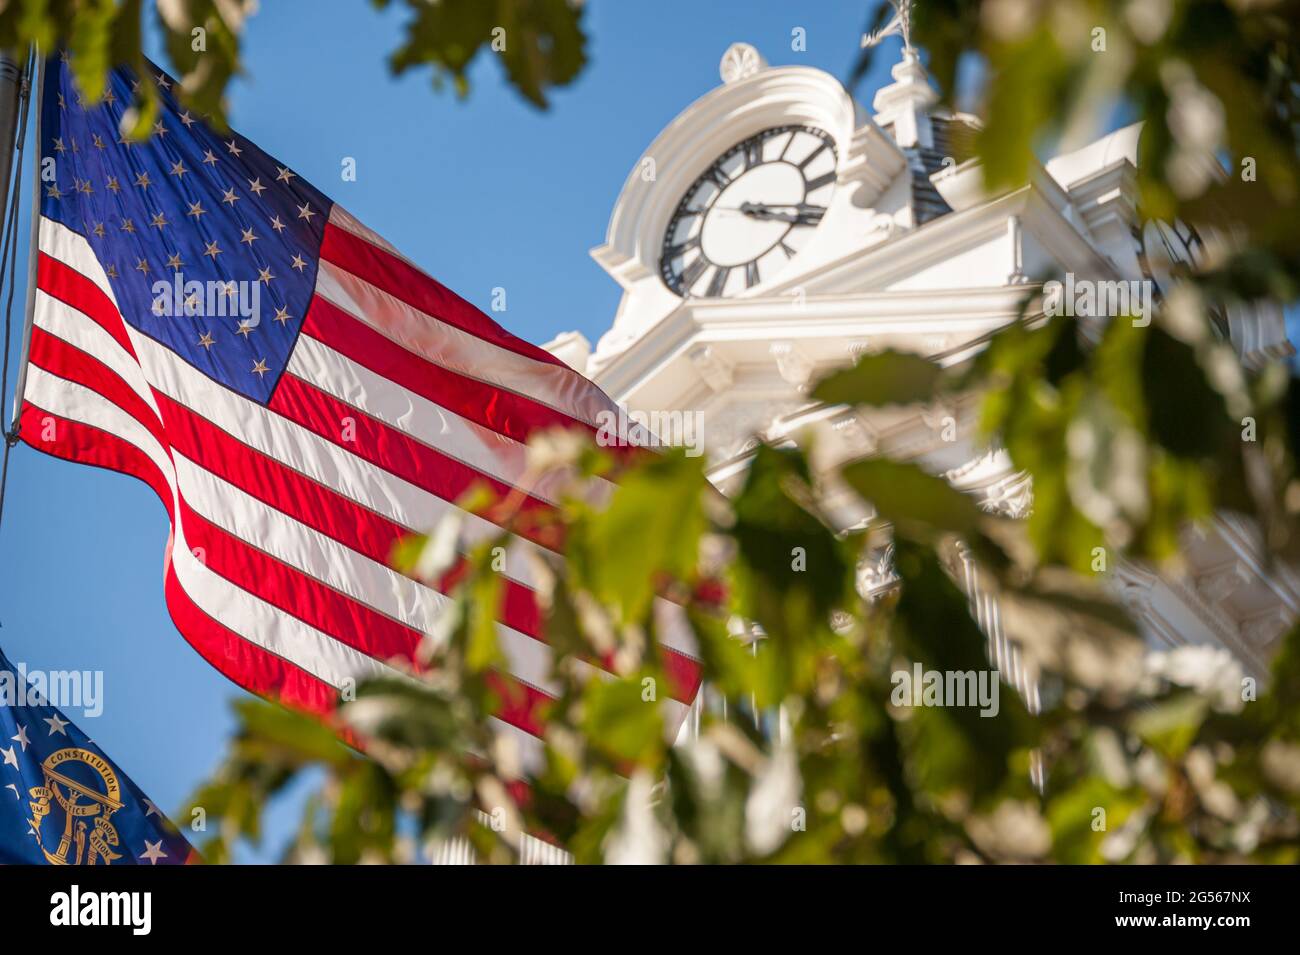 Drapeau américain et drapeau de l'État de Géorgie au palais de justice historique de Gwinnett, sur la place de la ville à Lawrenceville, Géorgie. (ÉTATS-UNIS) Banque D'Images